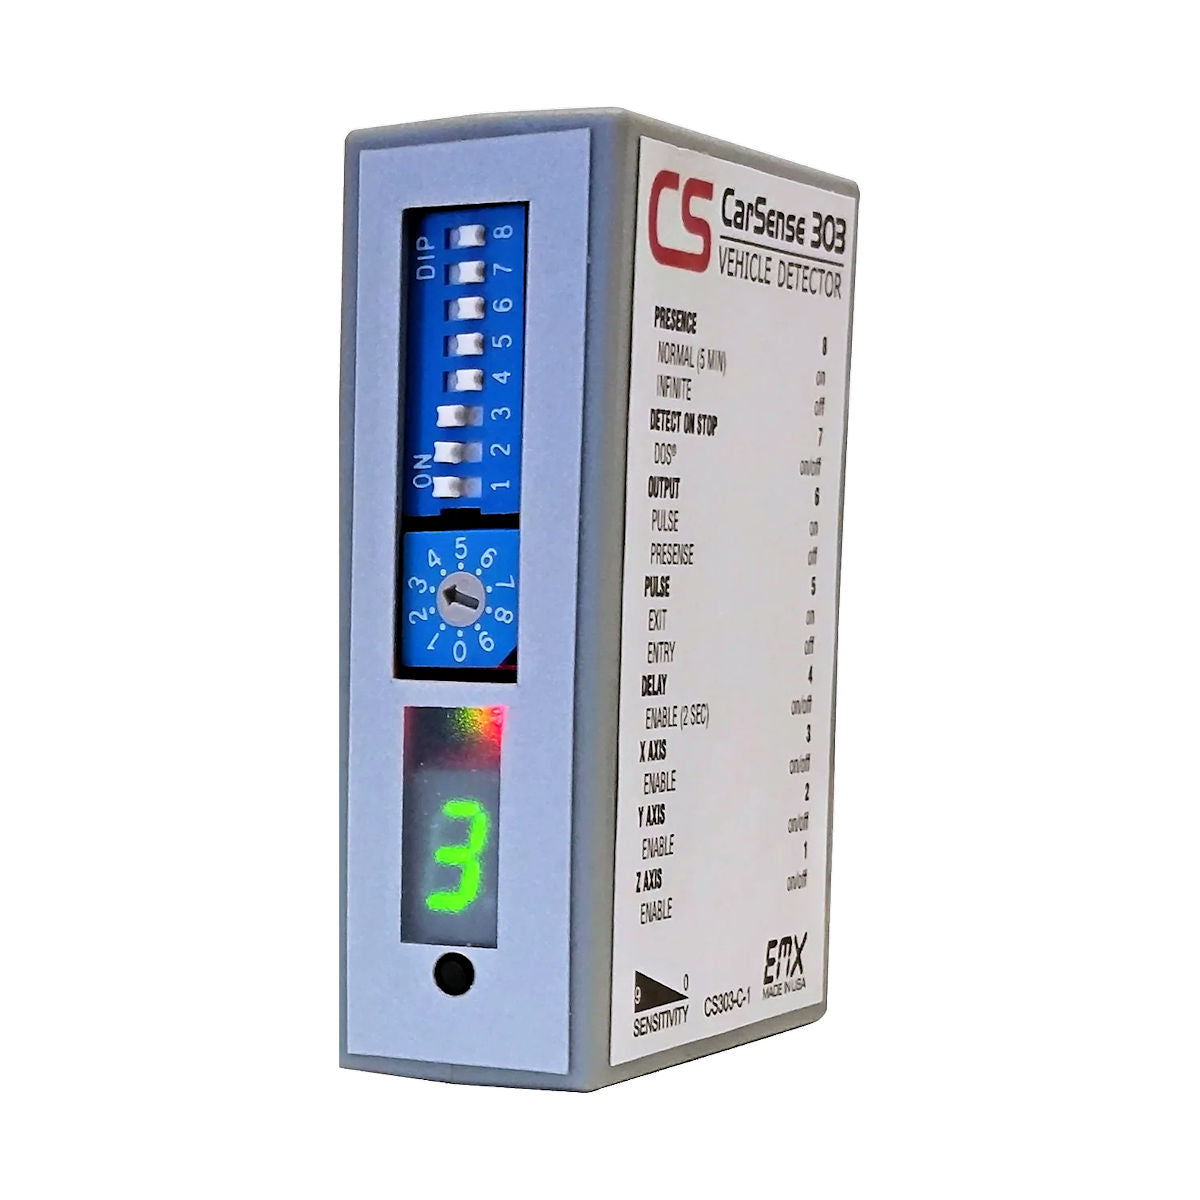 Detector de vehículos EMX CarSense 303